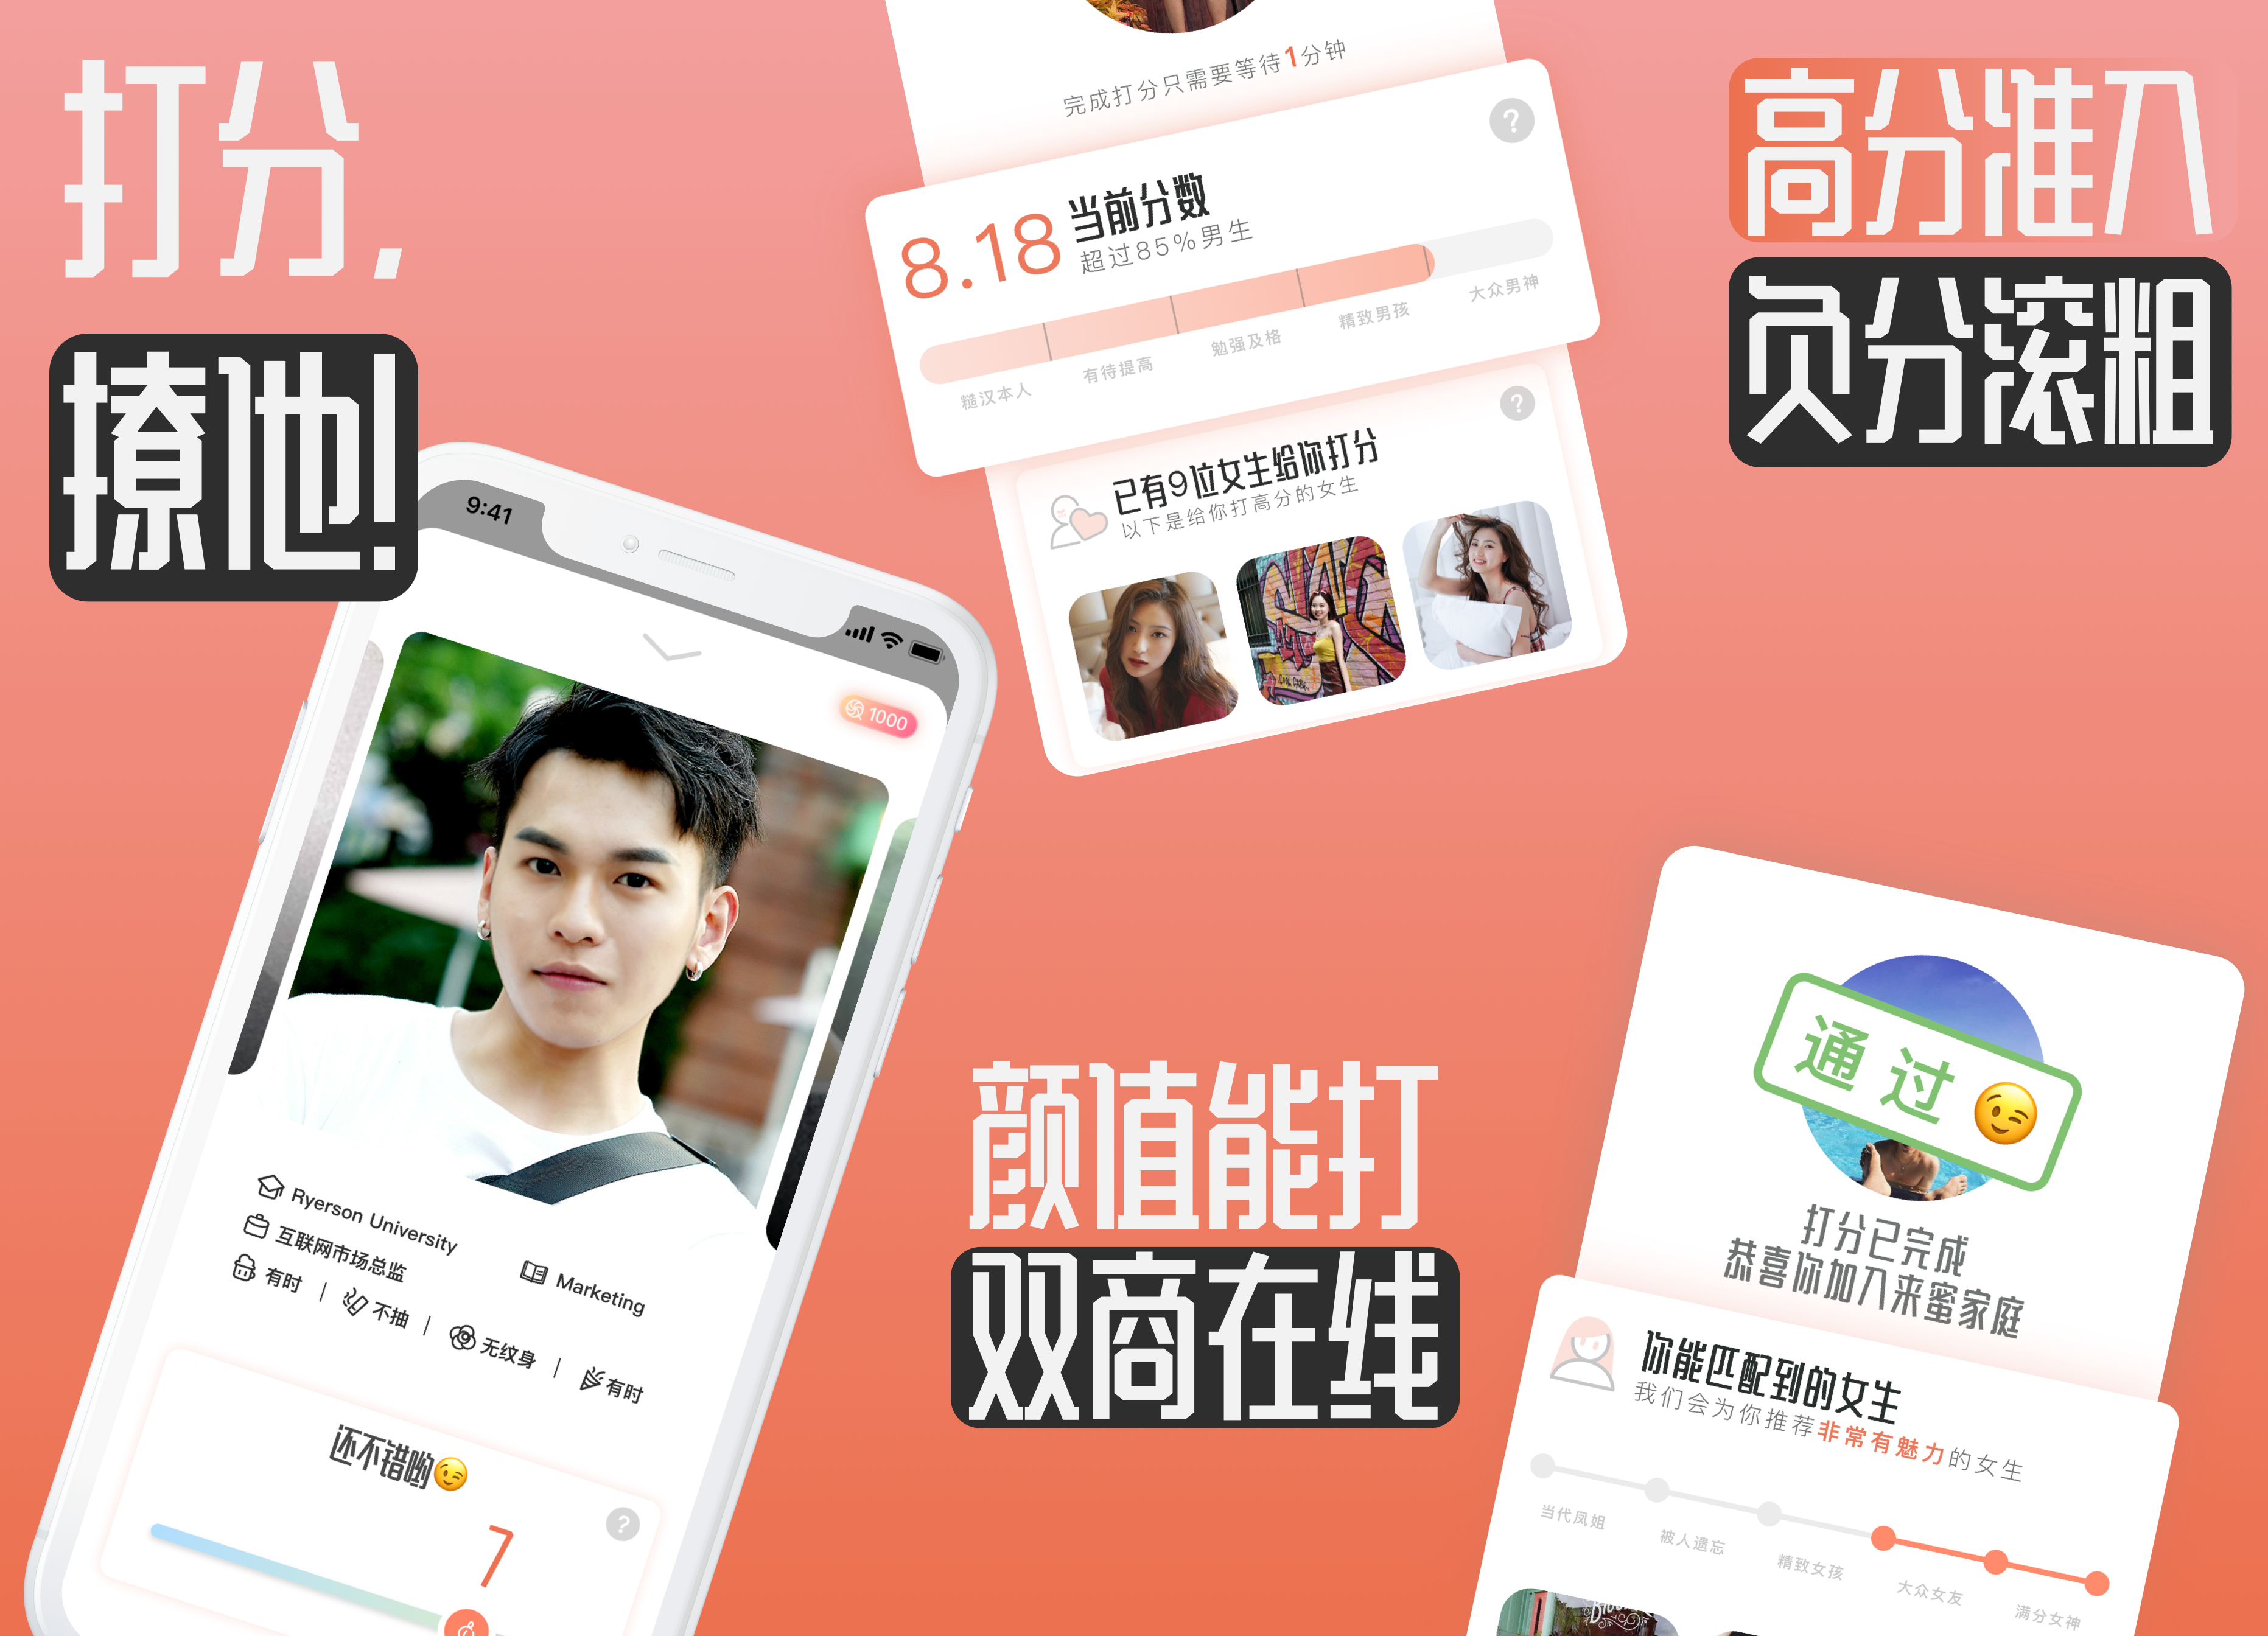 定位女性主导交友App，创新男性评分入场，「来蜜」要做“中国版Bumble”